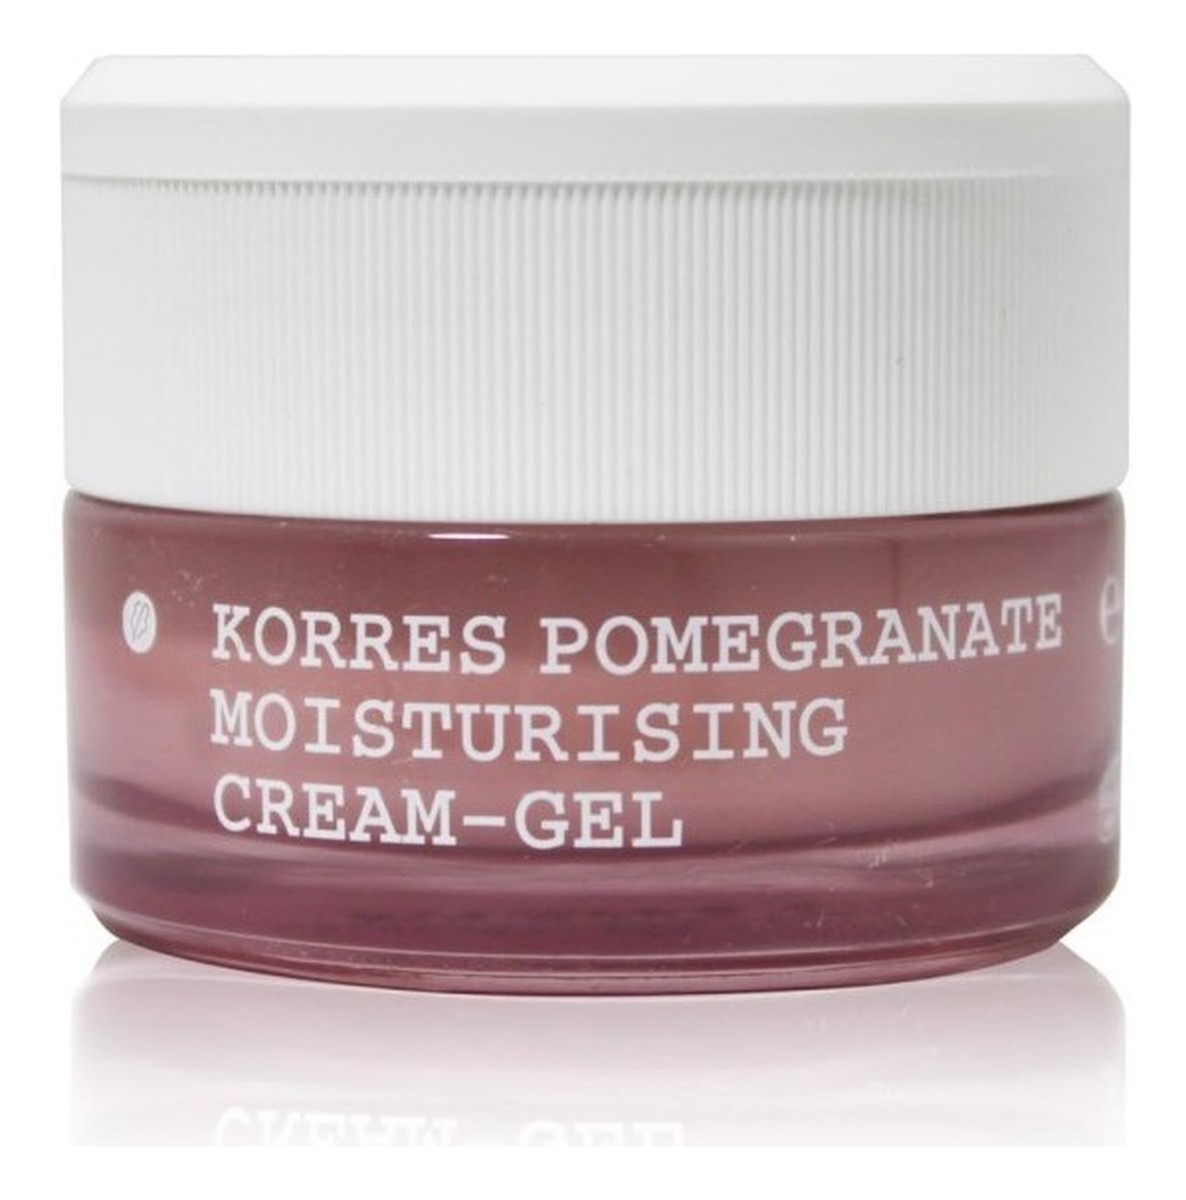 Moisturising & Balancing Cream-Gel Pomegranate Oily/Combination Skin Nawilżający Żel-Krem do twarzy z wyciągiem z granatu